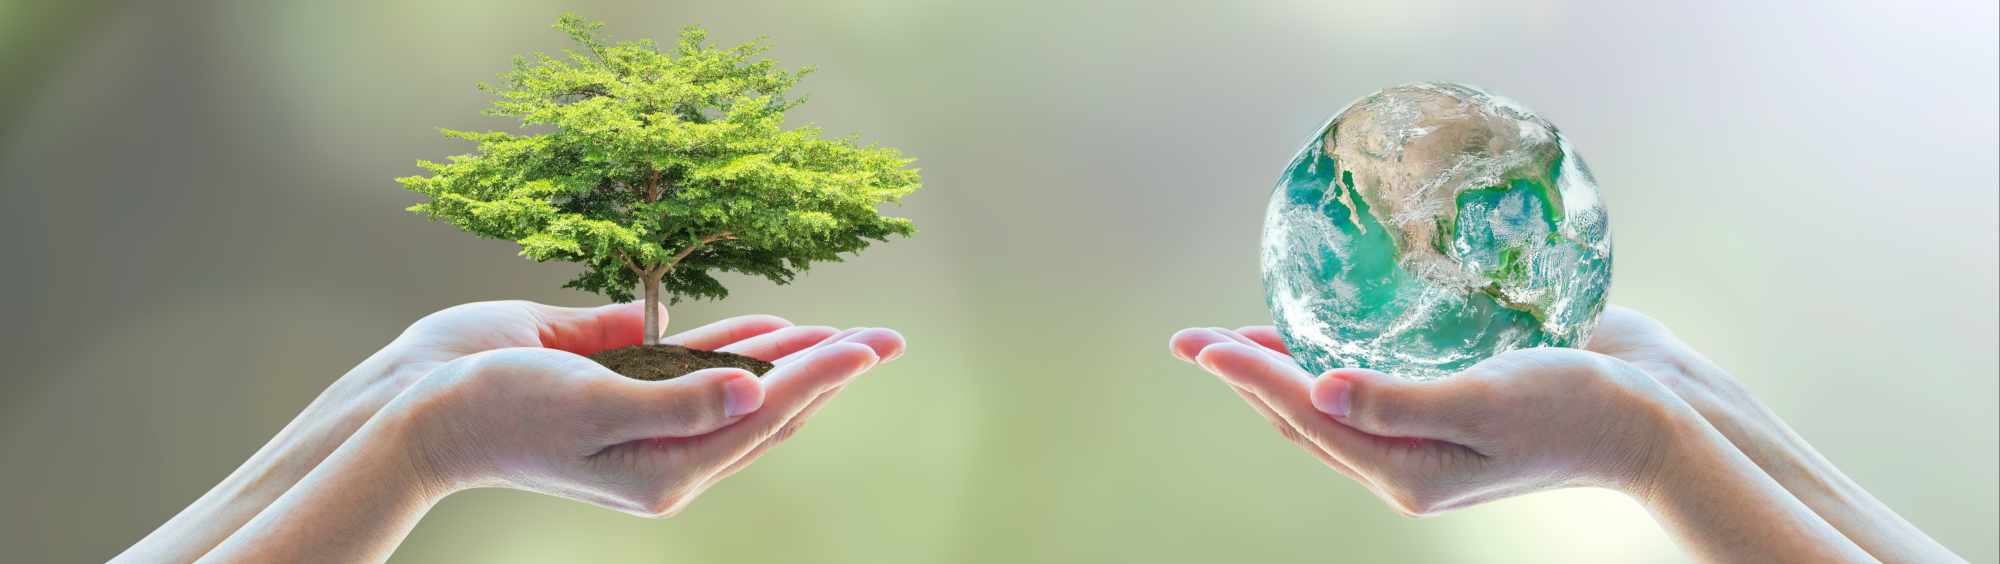 Nachhaltigkeit Contracting Erde Baum Hände